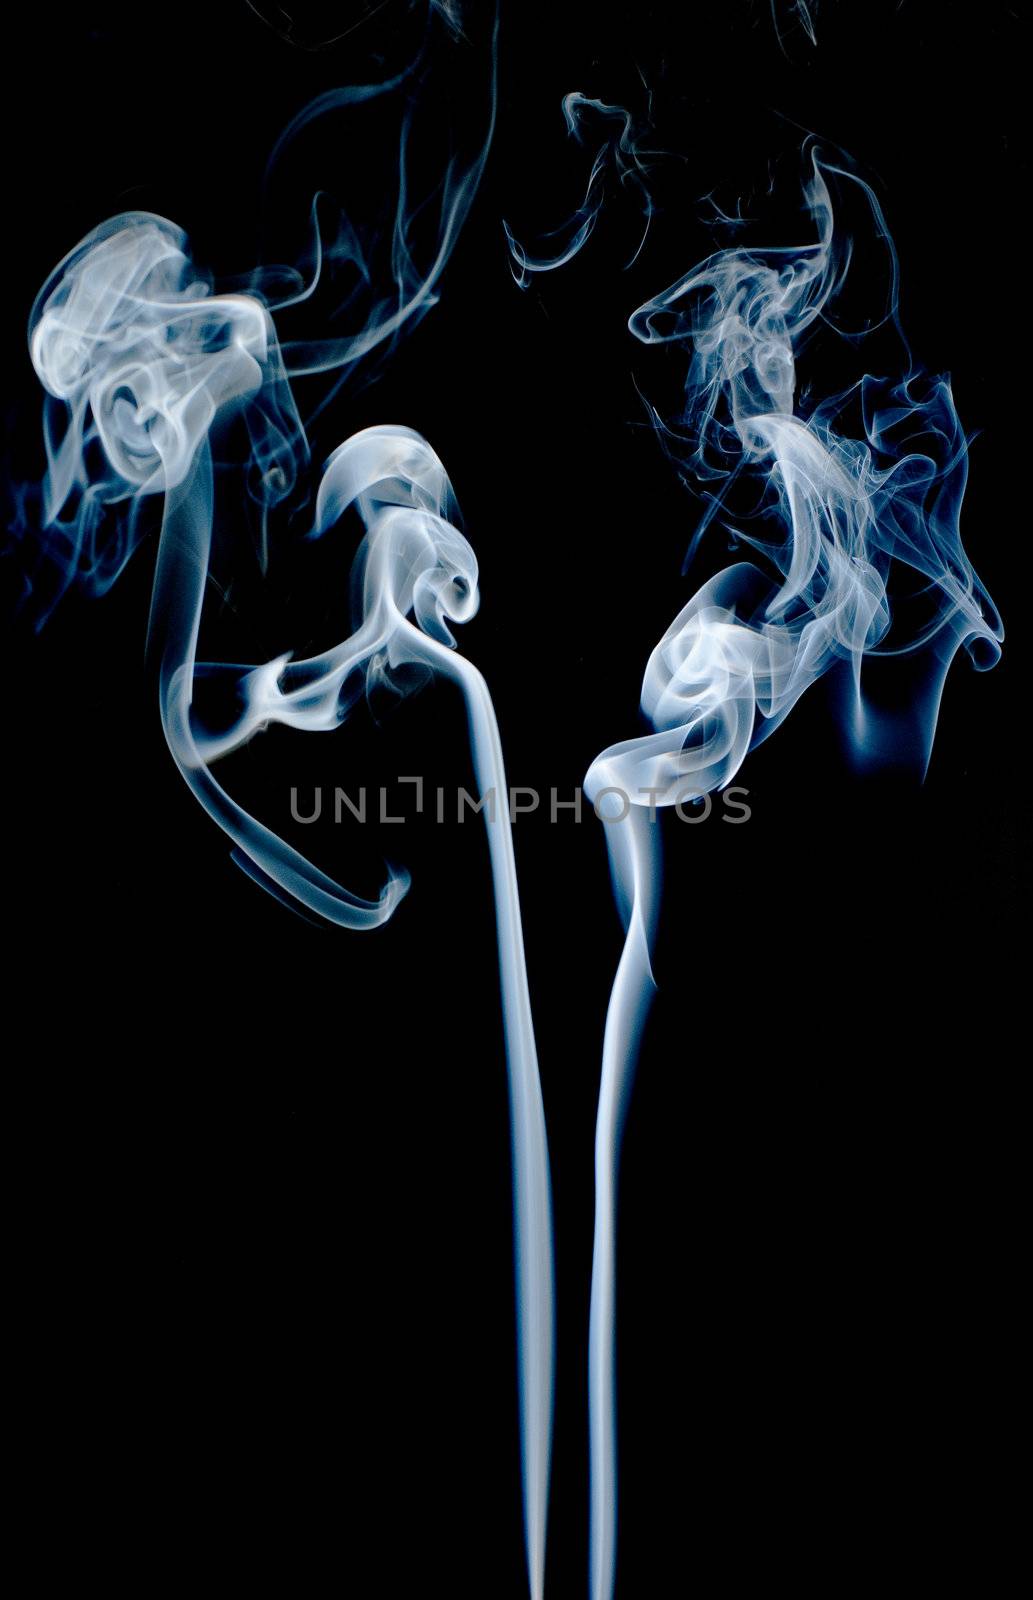 Abstract smoke by homydesign